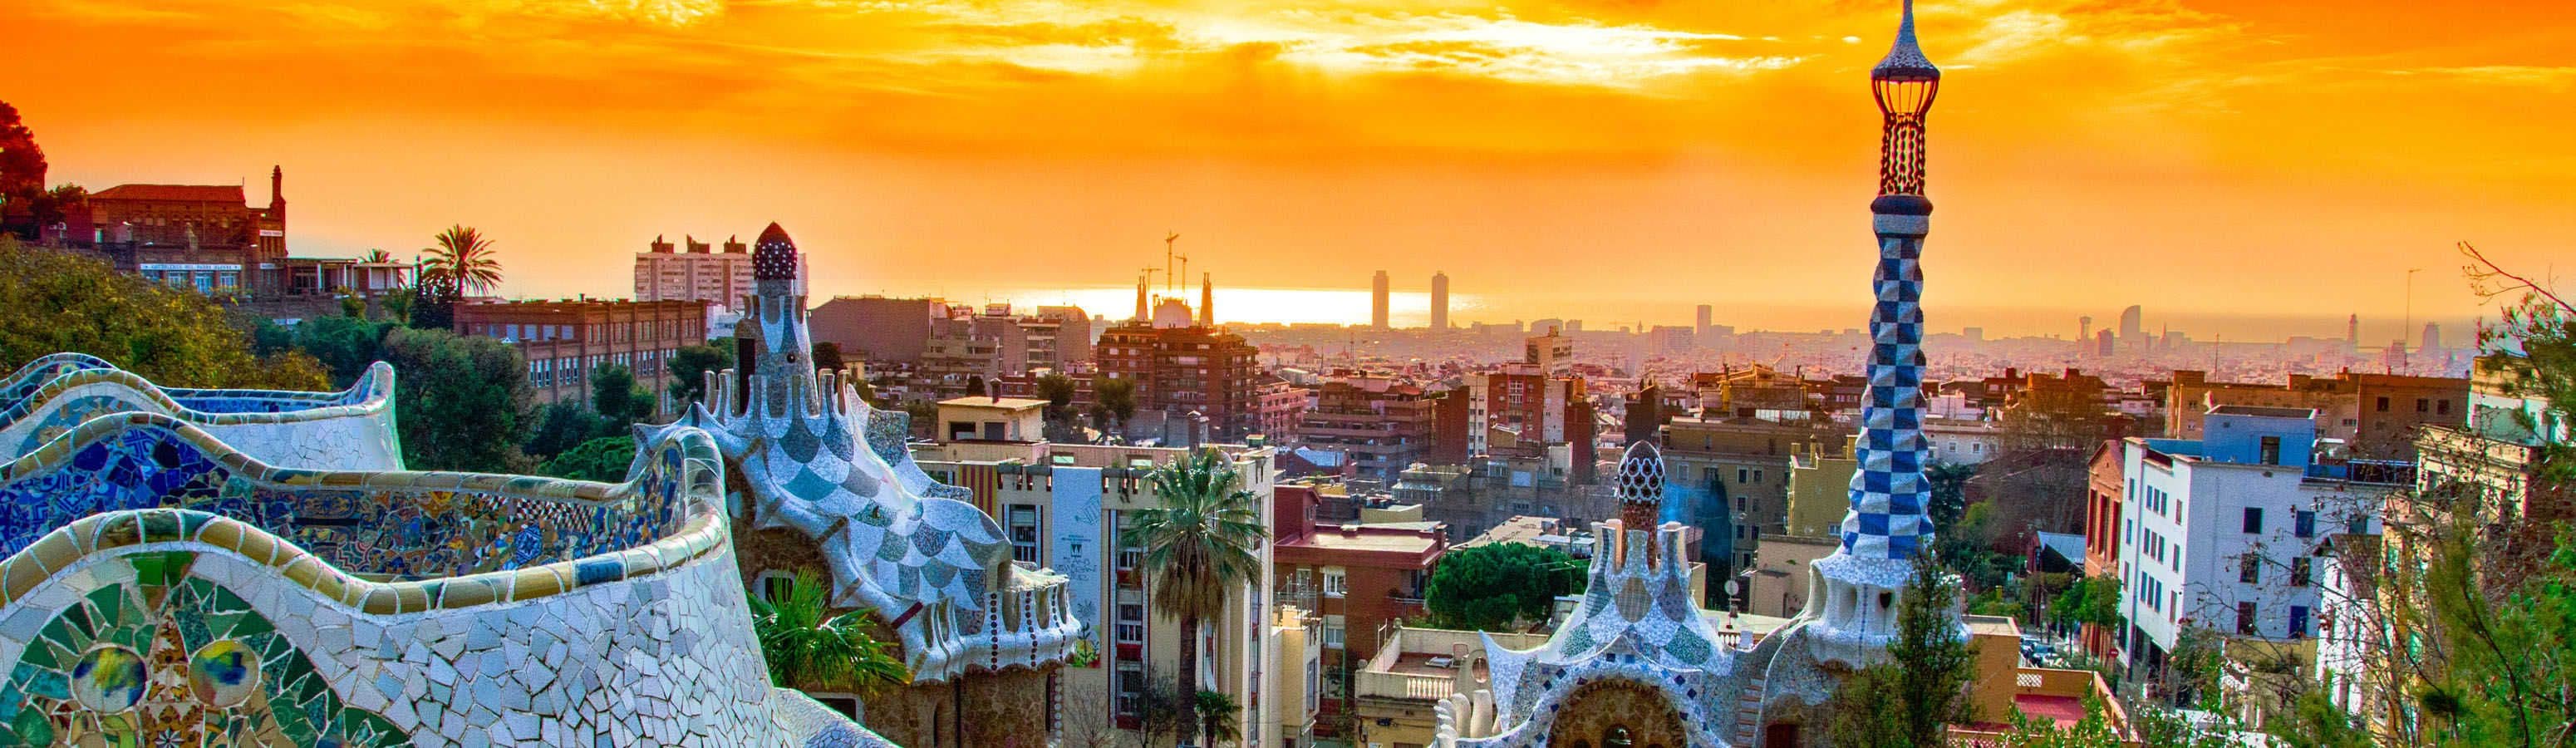 Барселона - дом бесконечного строительства